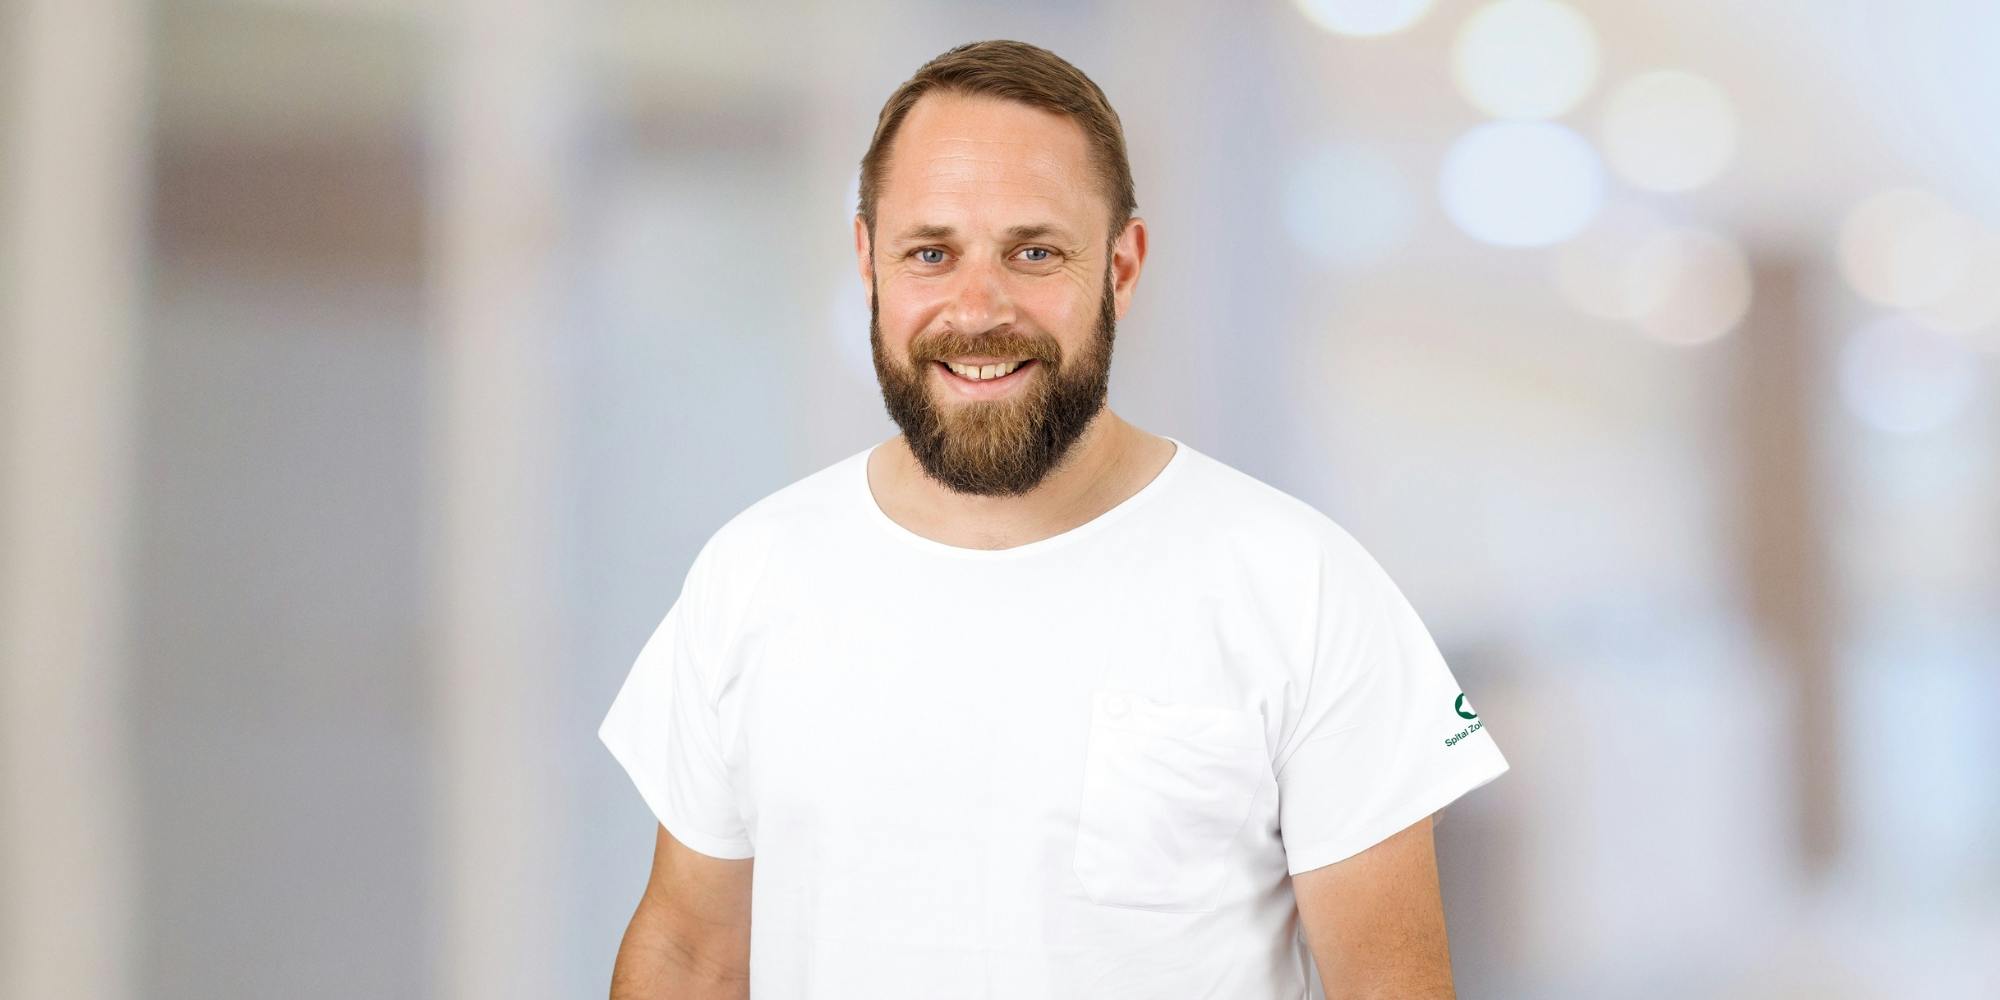 Lächelnder Mann mit Bart in weißem T-Shirt vor unscharfem Hintergrund.